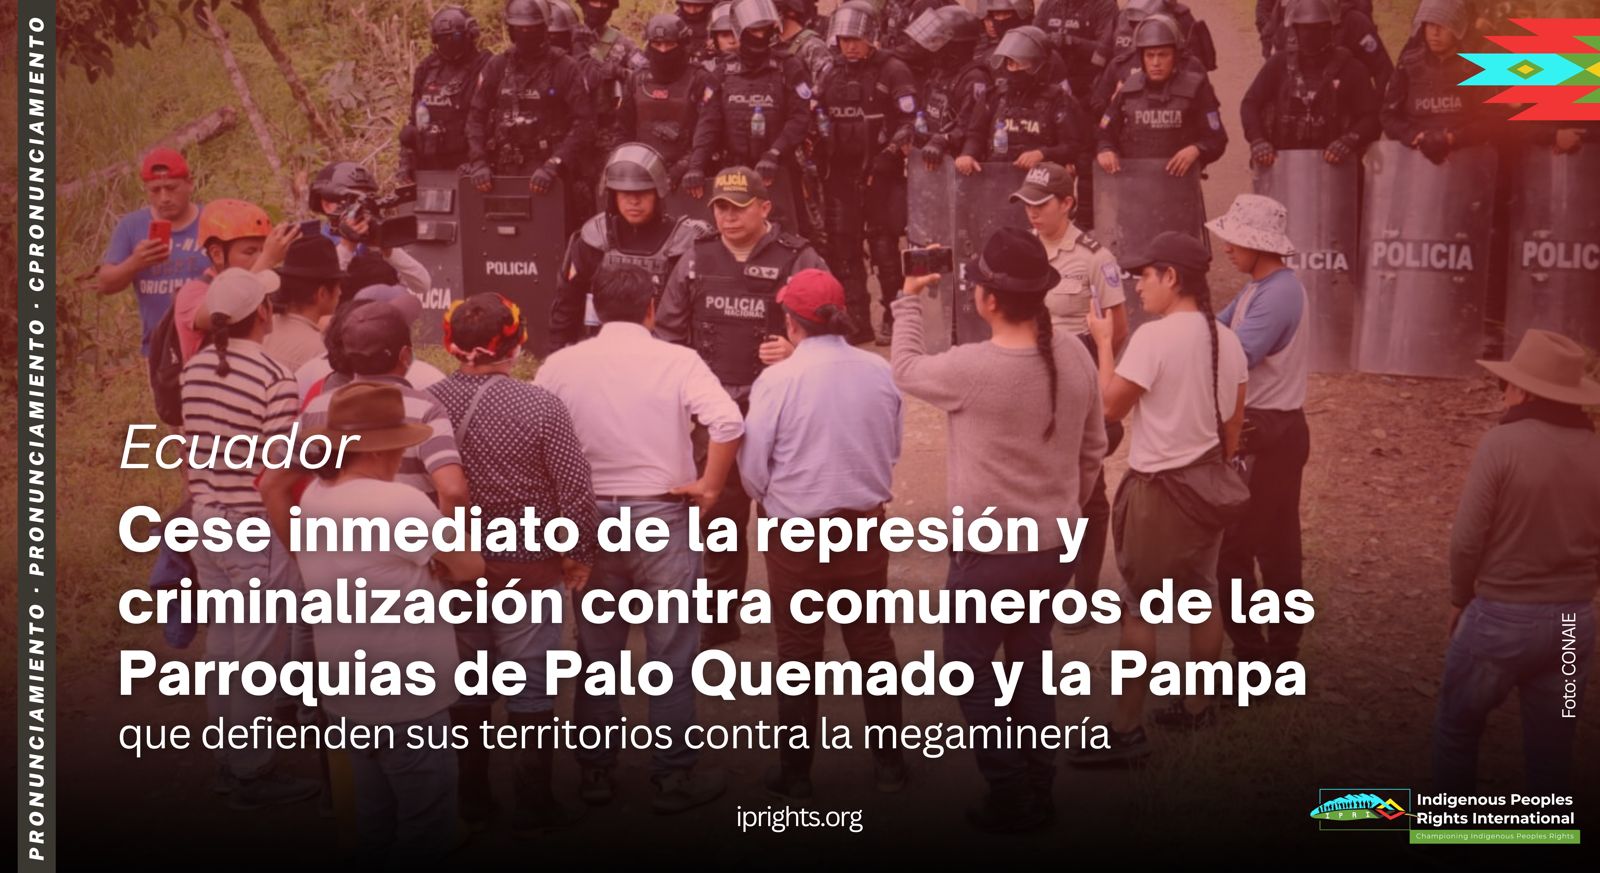 ECUADOR: Cese inmediato de la represión y criminalización contra comuneros de las Parroquias de Palo Quemado y la Pampa que defienden sus territorios contra la megaminería